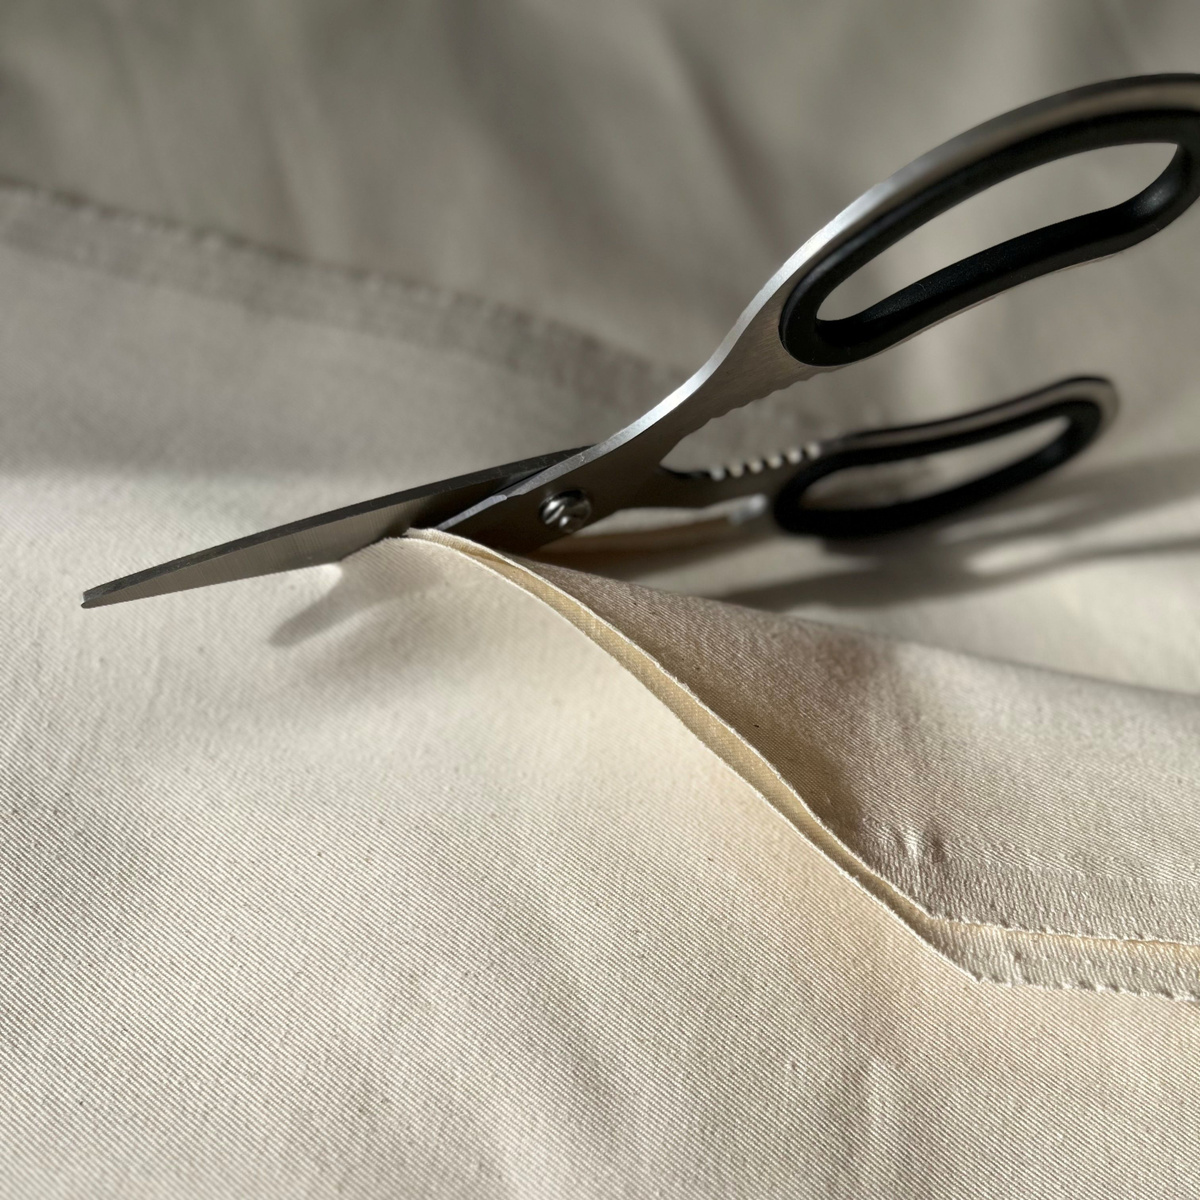 До раскроя изделия ткань саржа суровая должна пройти влажно-тепловую обработку с целью исключения усадки ткани в процессе пошива и ношения.